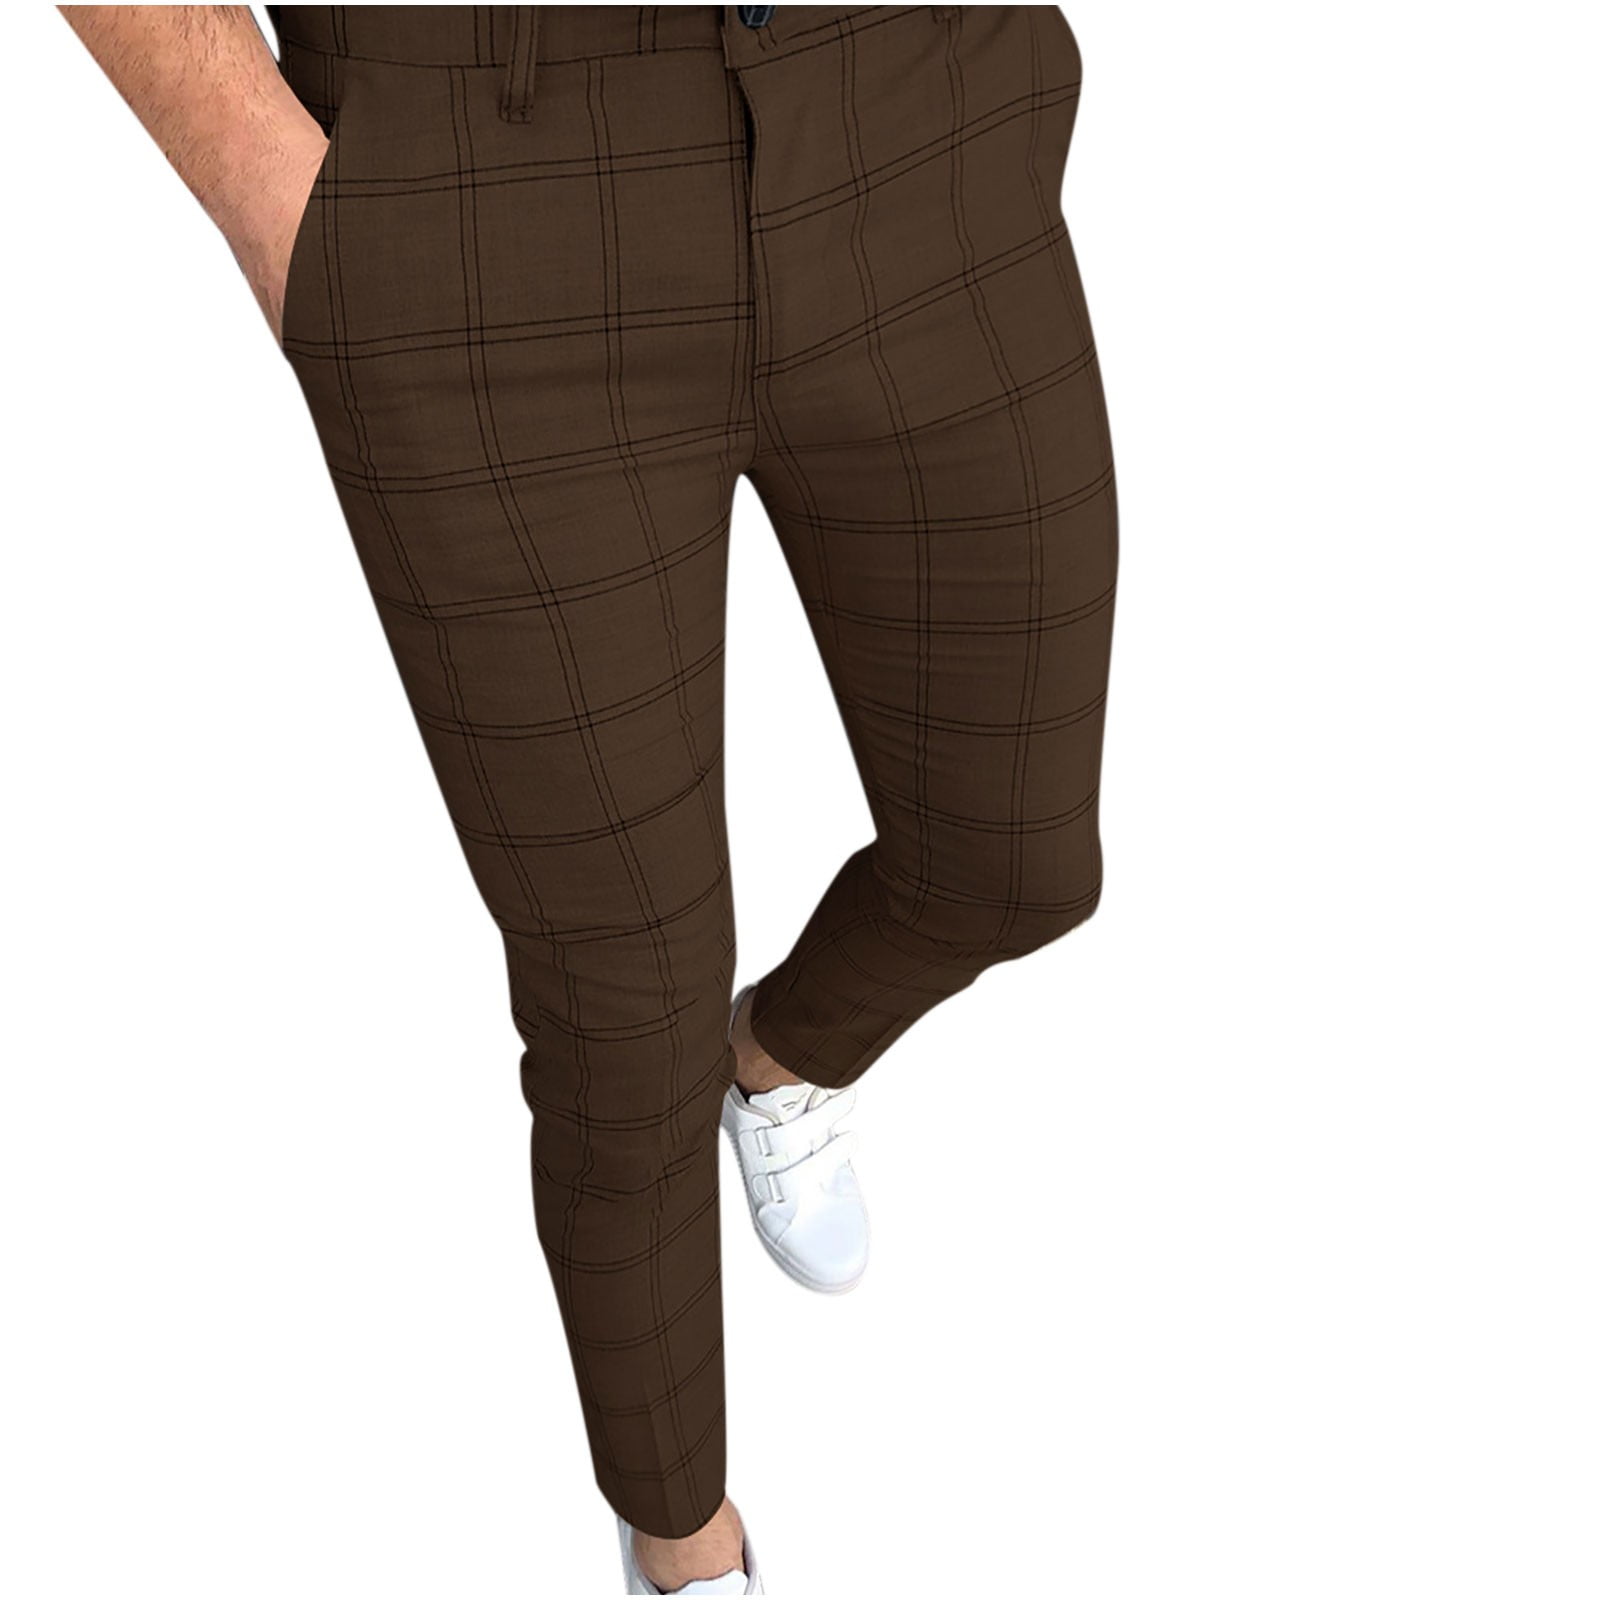 Men Formal Pants at Rs 999/piece | Karnal | ID: 2849557592662